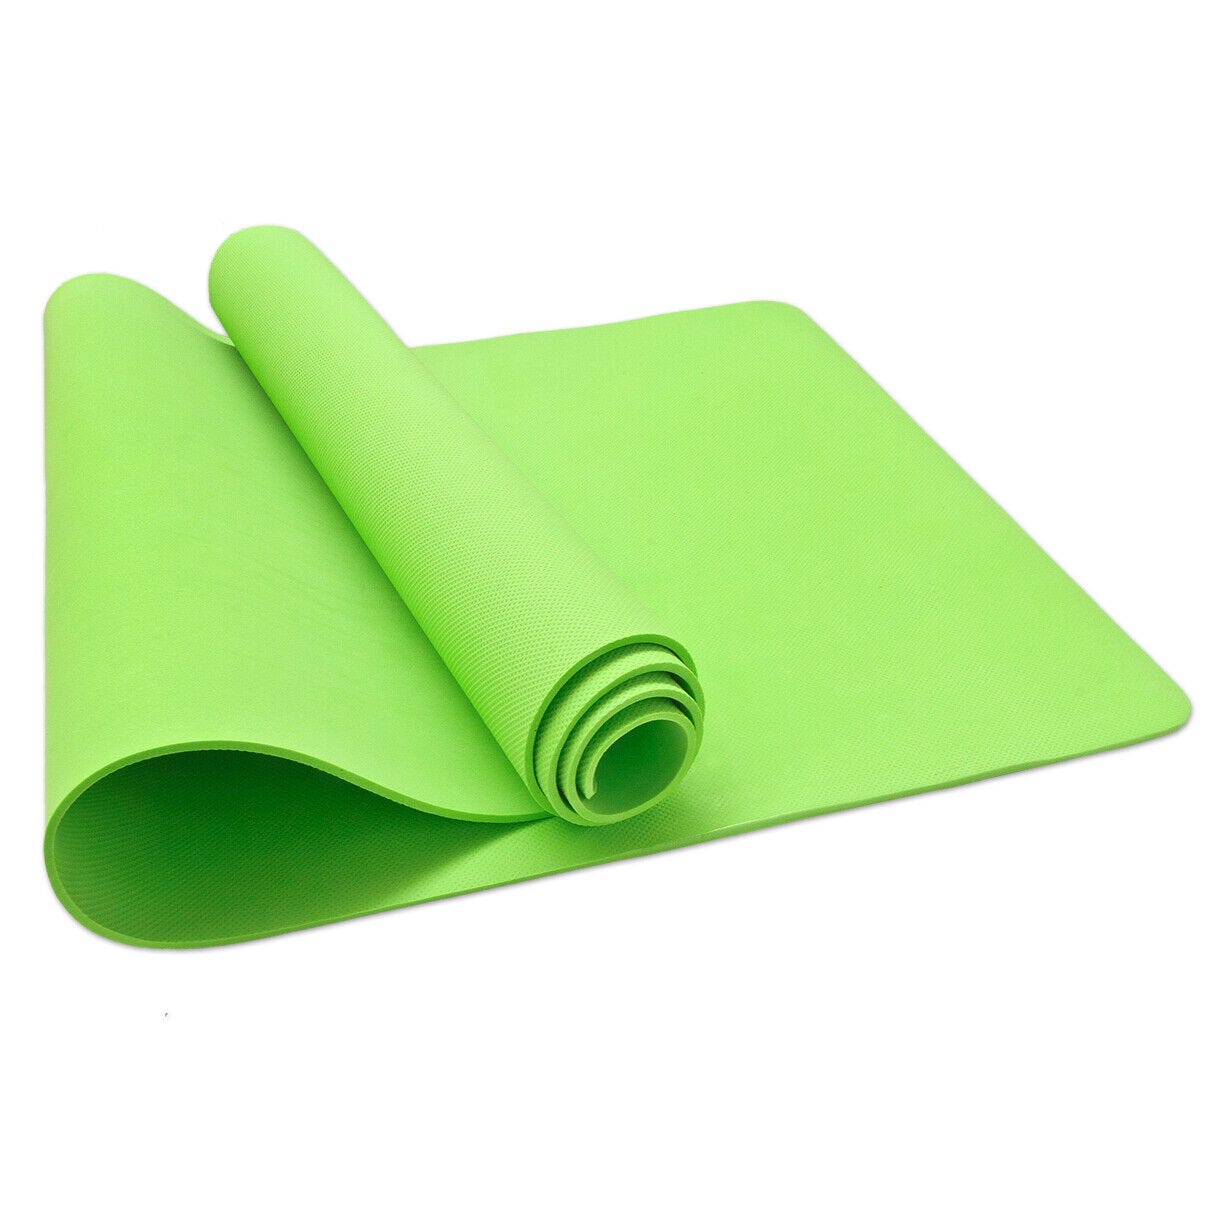  ALAZA - Esterilla de yoga con diseño de hojas de palmera, color  verde, con bolsa, 26.0 x 72.0 in, antideslizante, de goma, plegable, para  yoga, pilates, mujeres, casa, fitness, ejercicio 